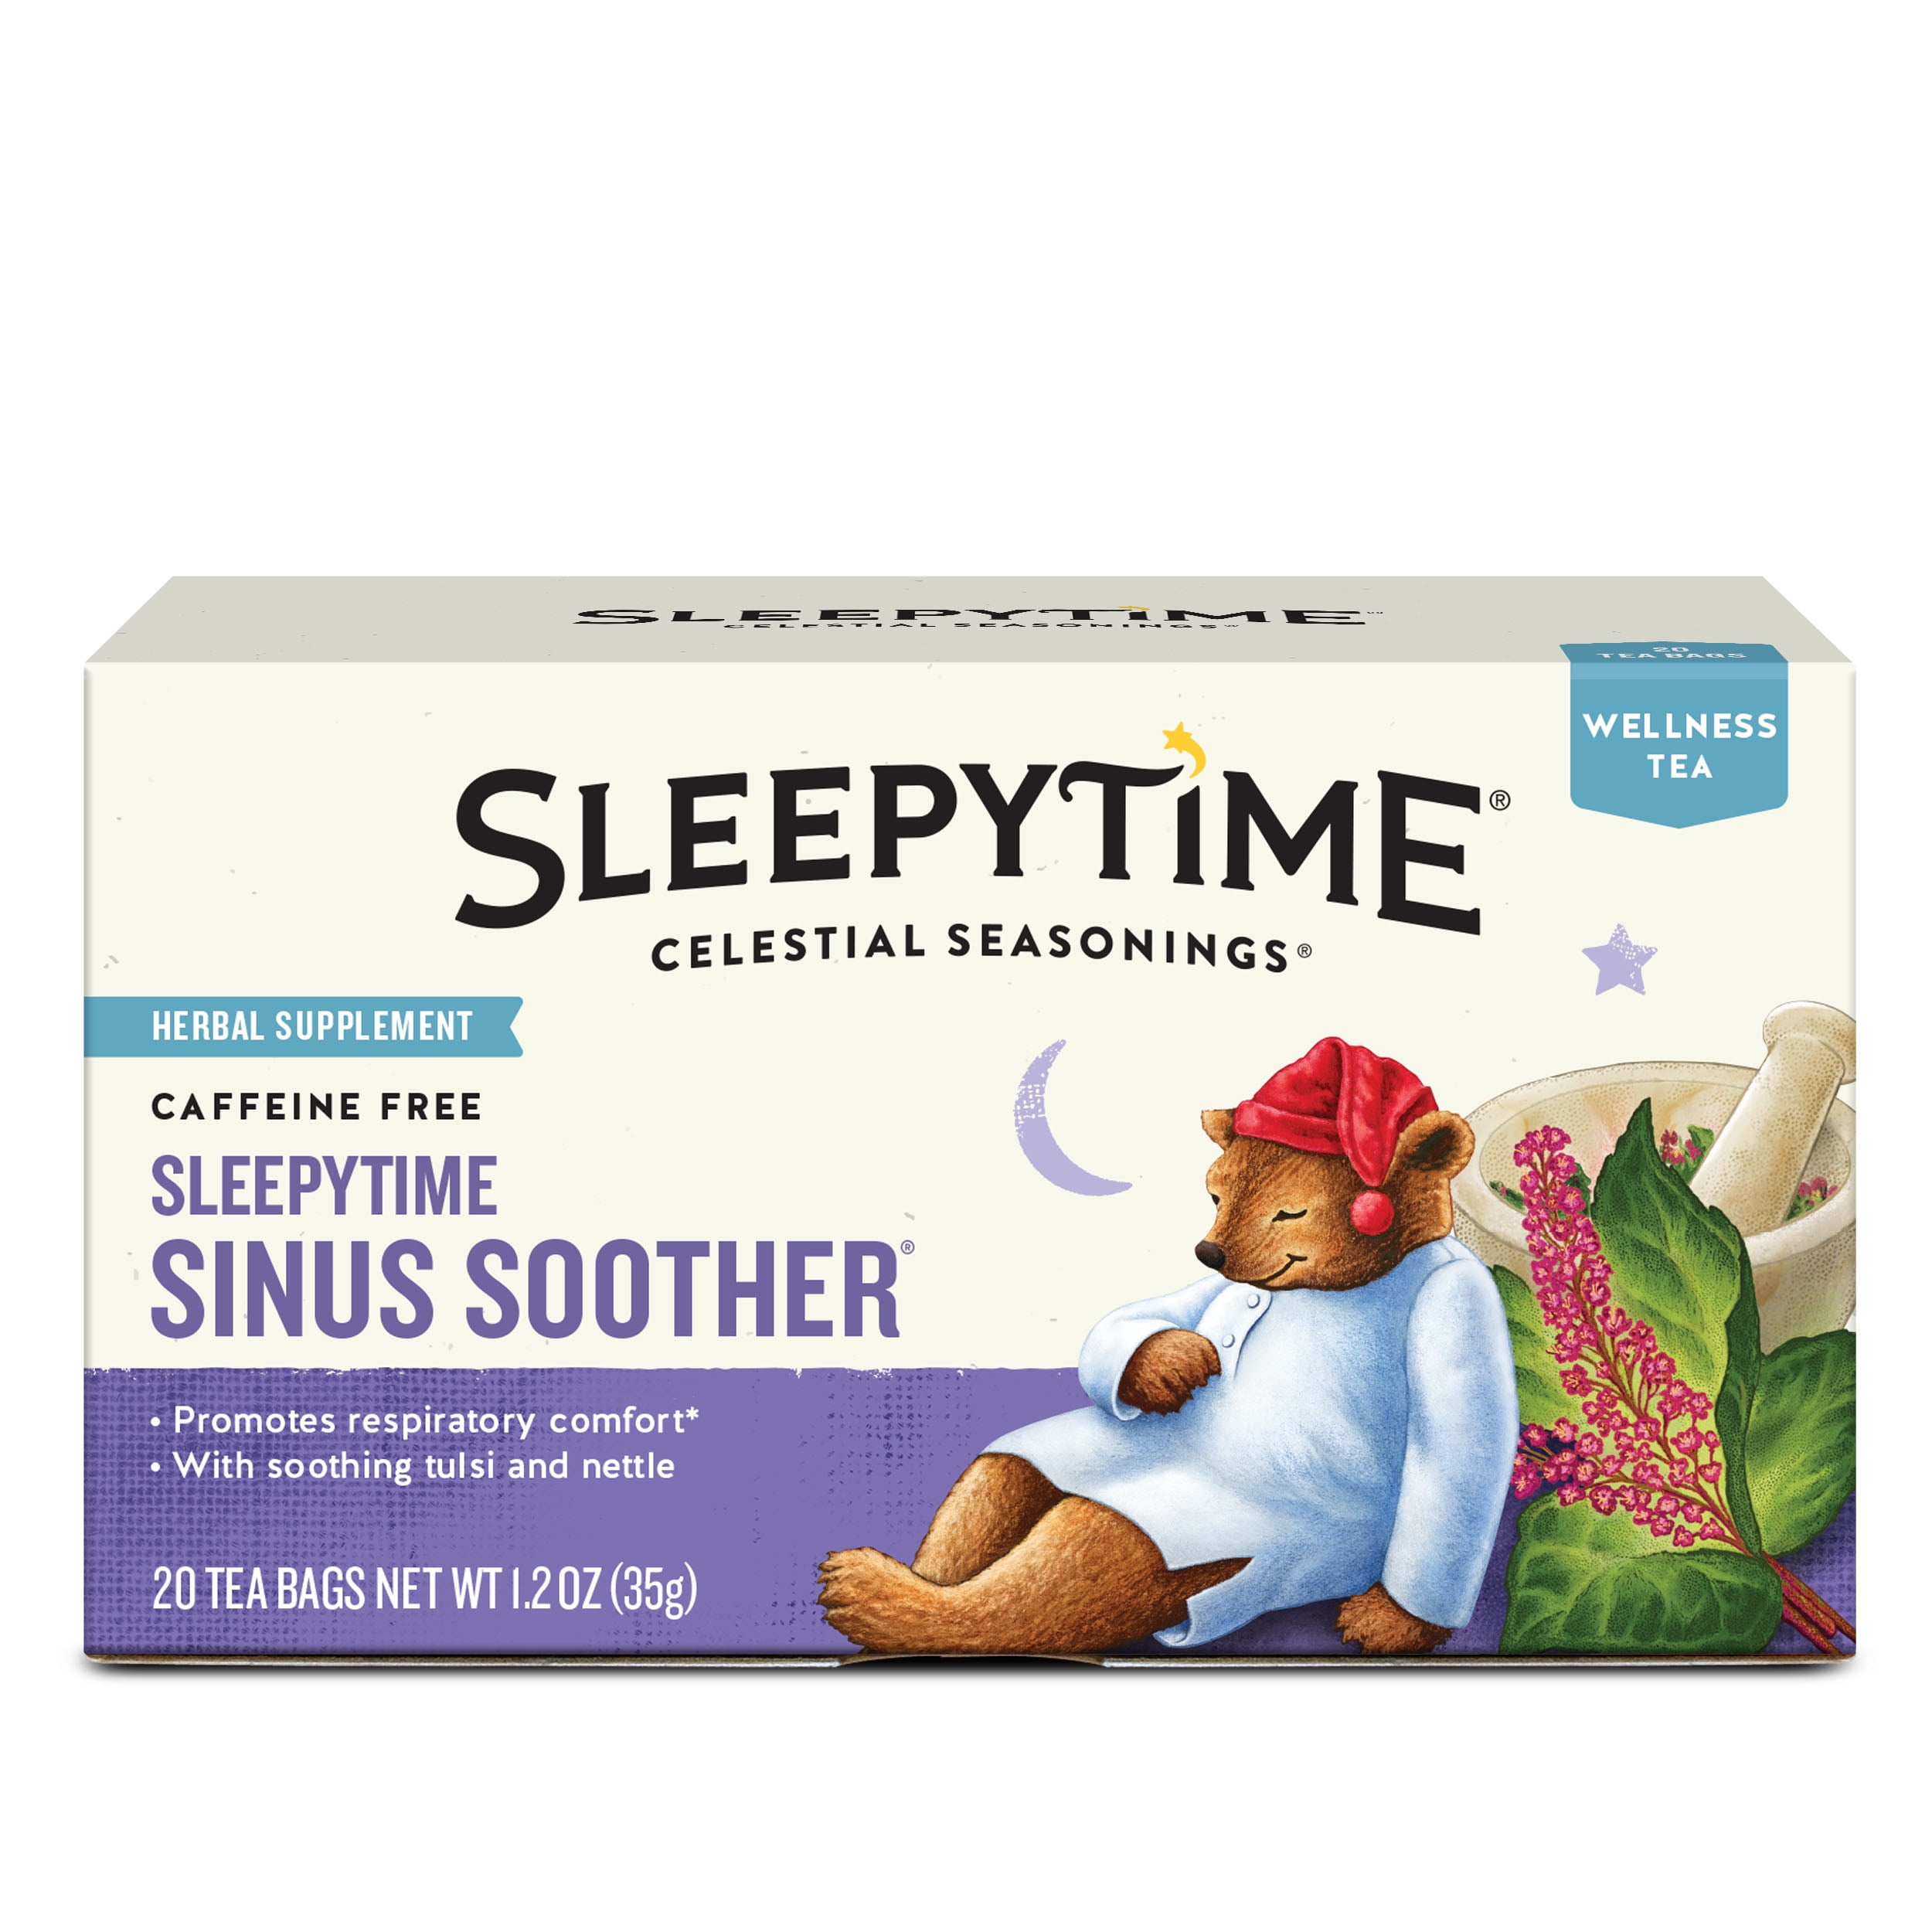 Celestial Seasonings Sleepytime Sinus Soother, Herbal Wellness Tea Bags, 20 Count